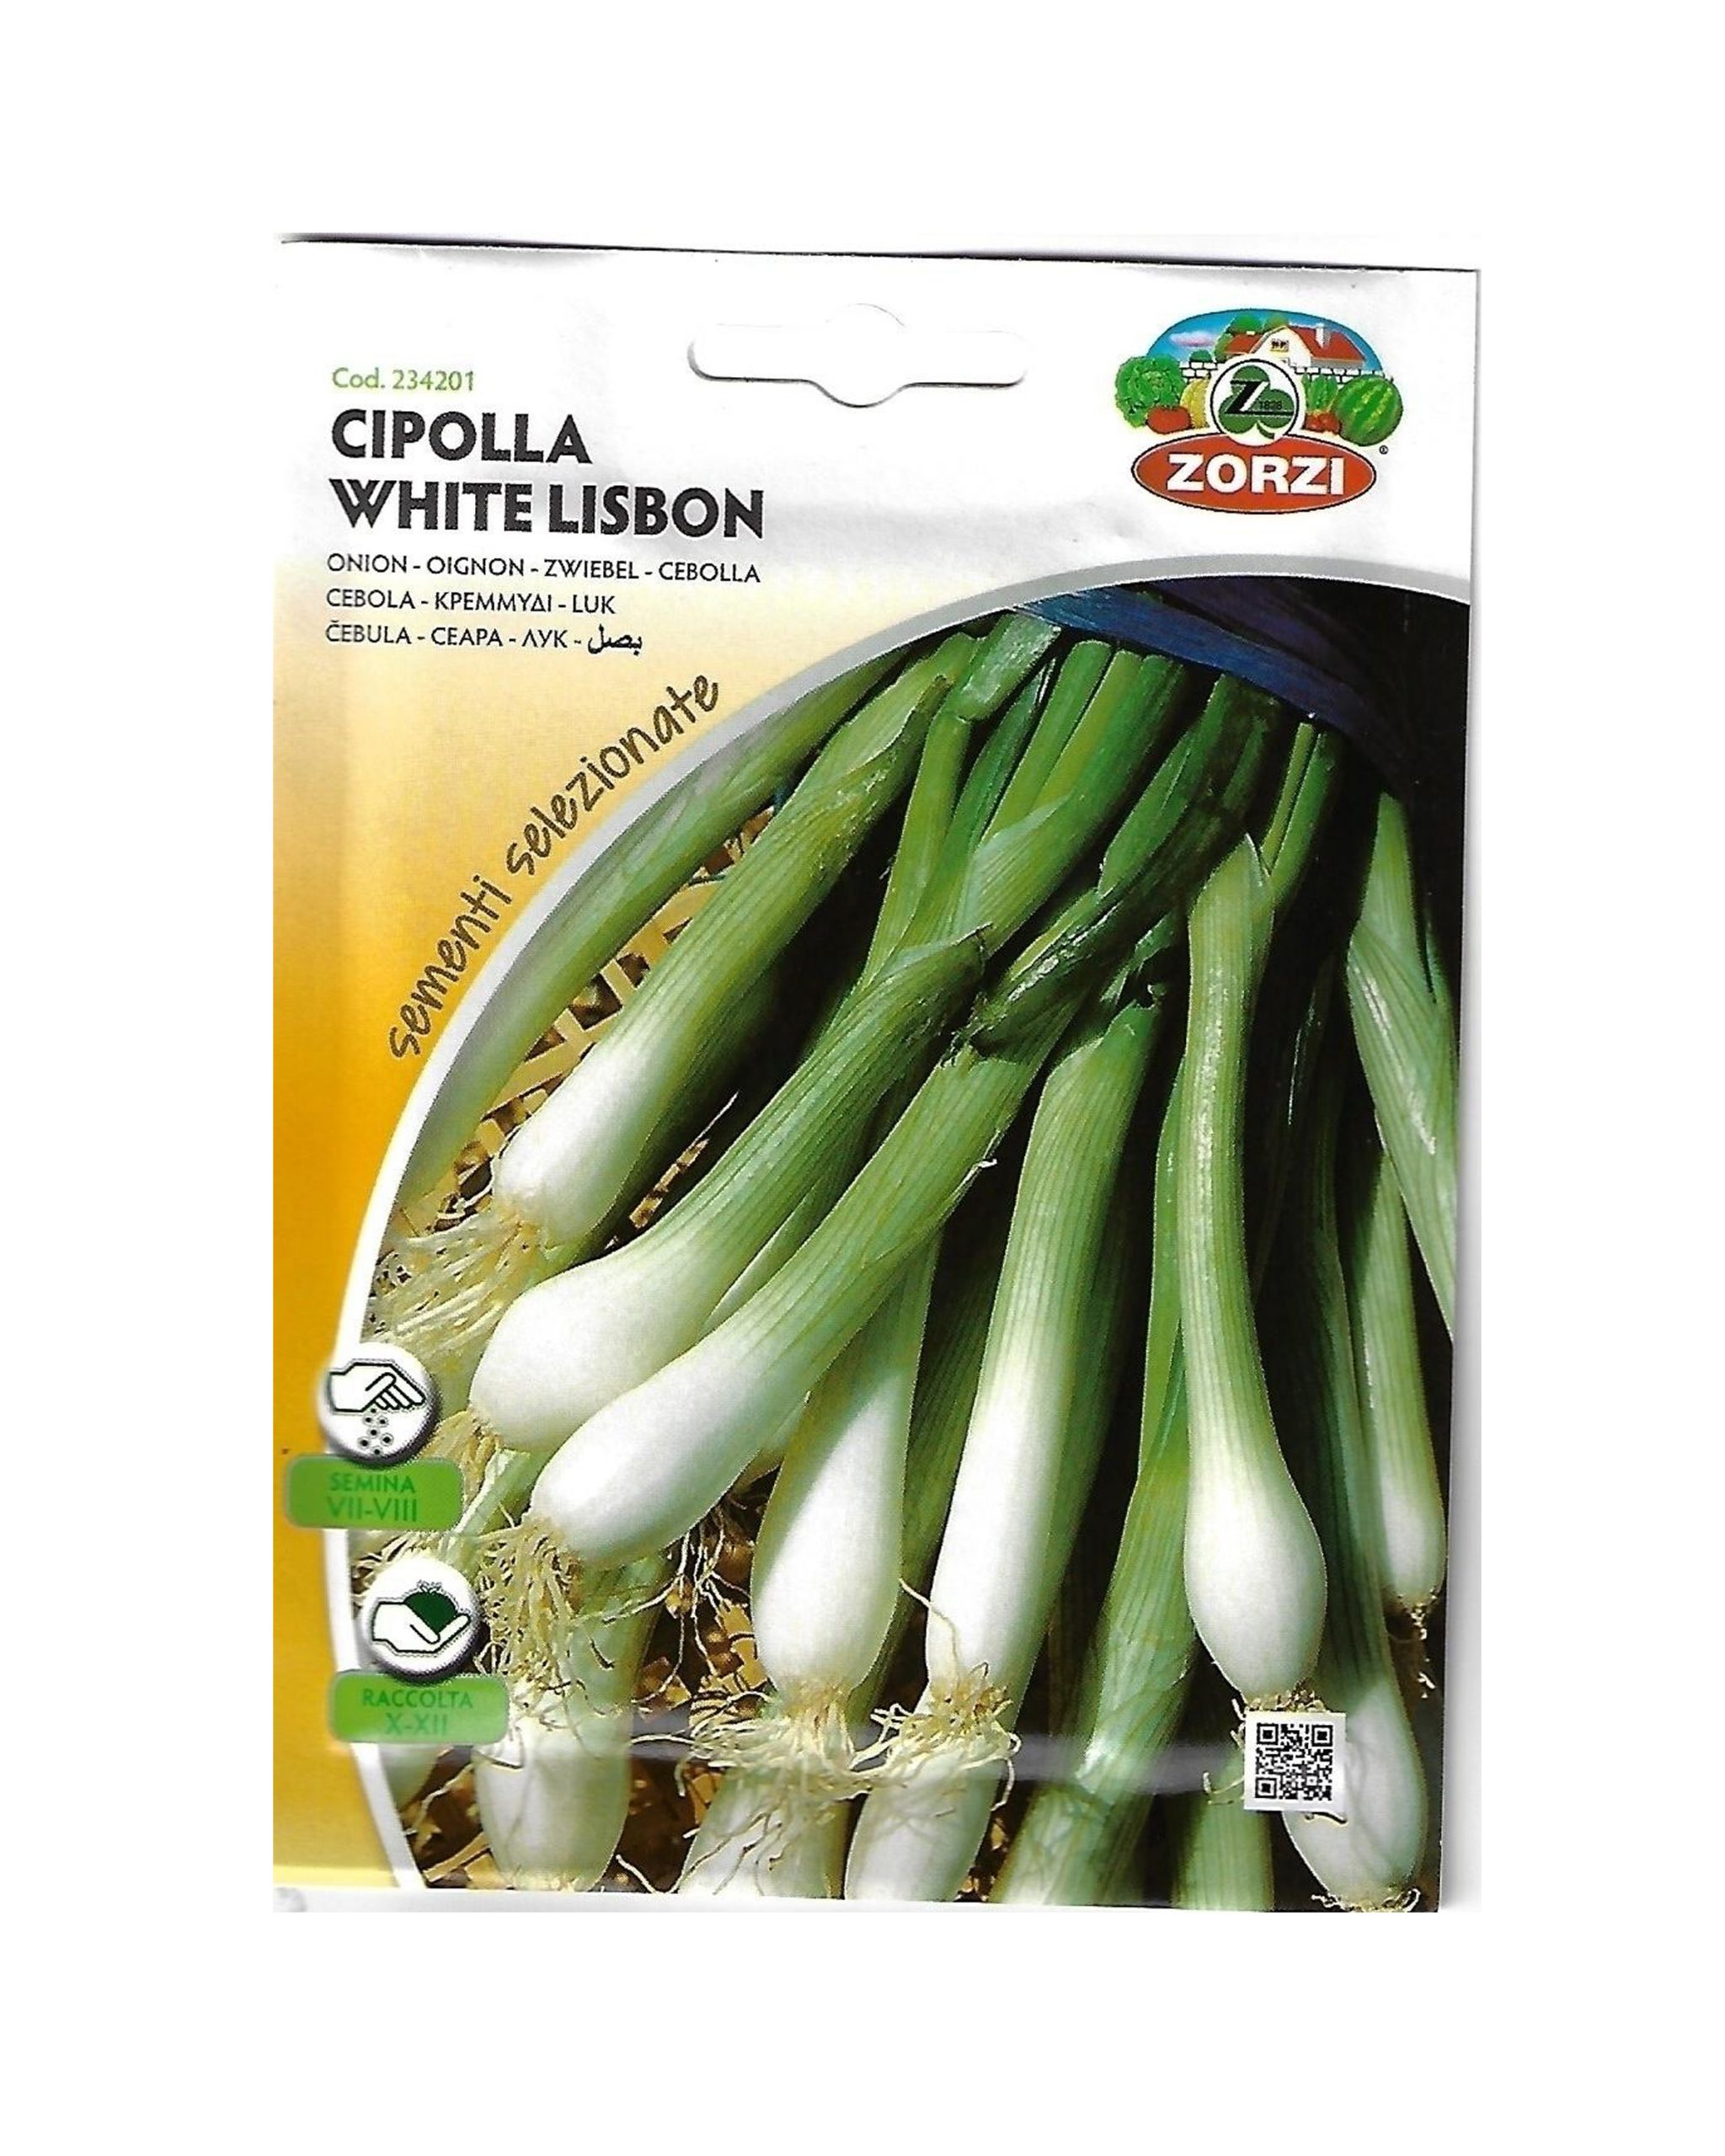 Cipolla White Lisbon